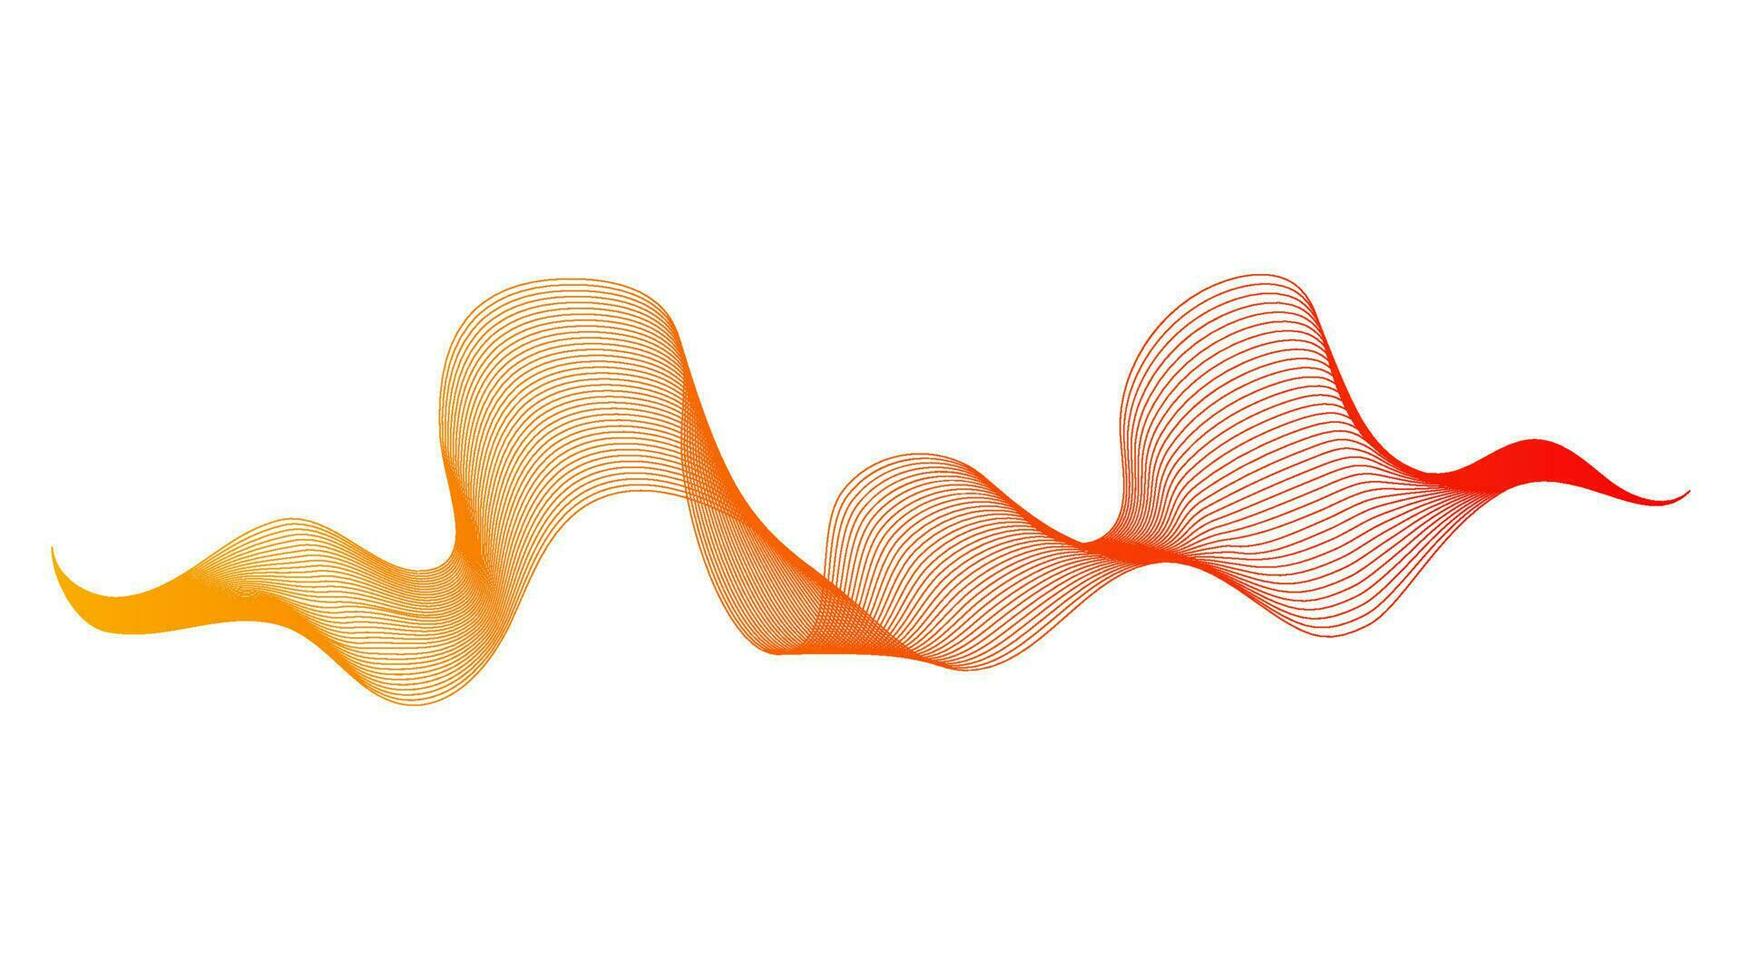 toile de fond abstraite avec des lignes de dégradé de vagues colorées sur fond blanc. fond de technologie moderne, conception de vagues. illustration vectorielle vecteur